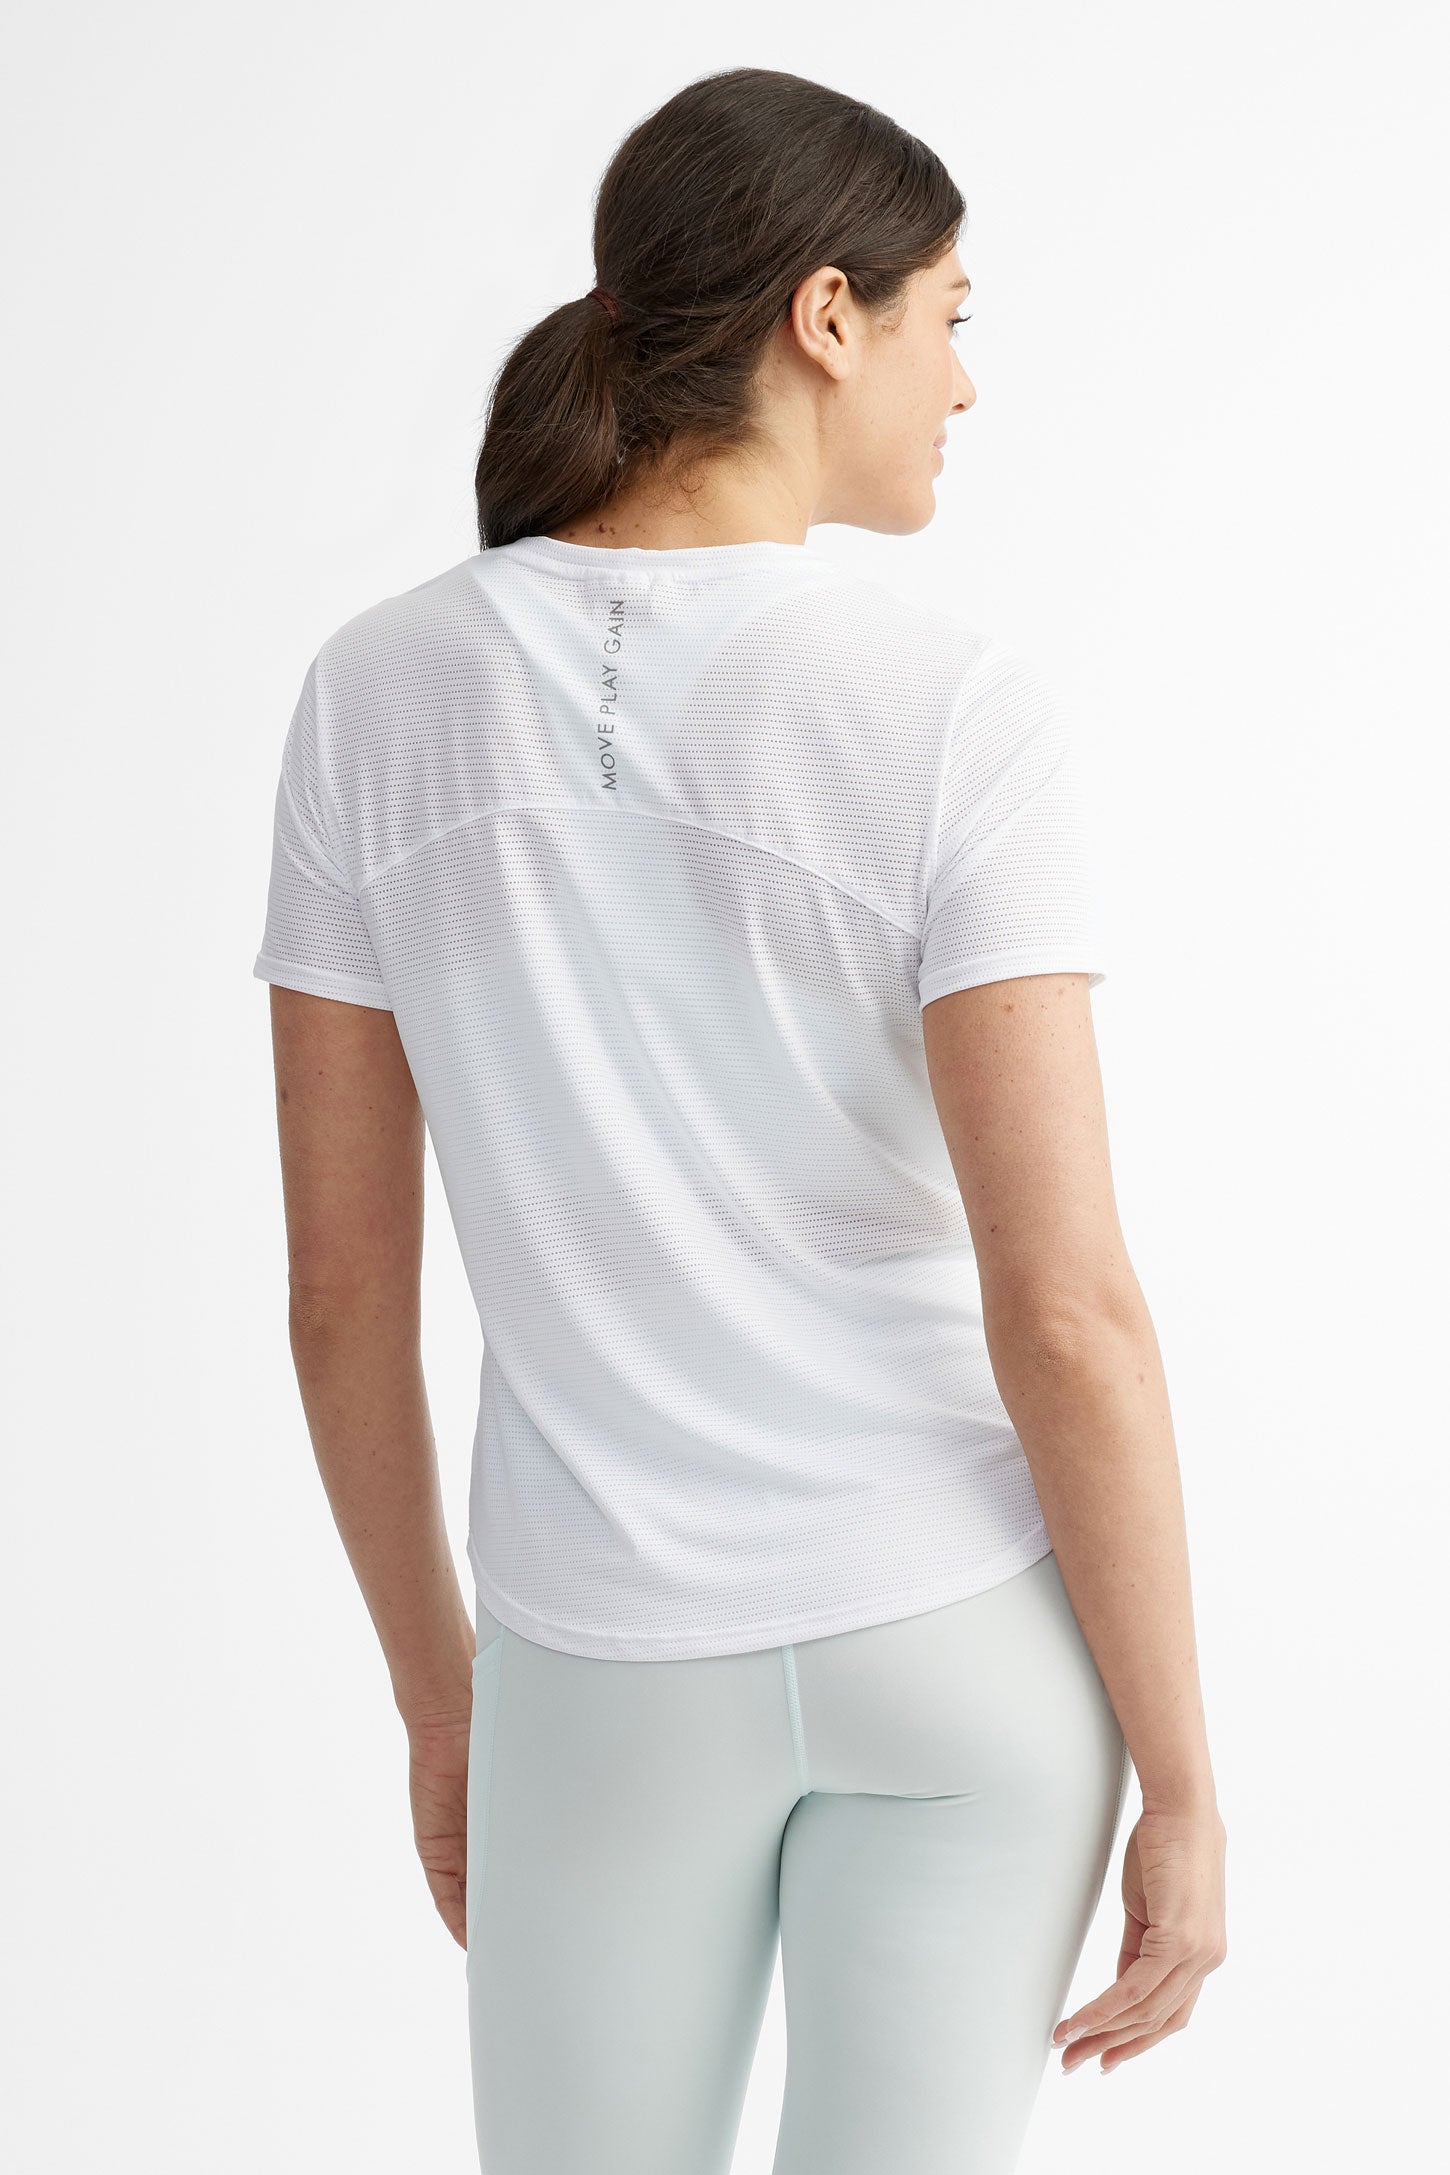 T-shirt athlétique - Femme && BLANC